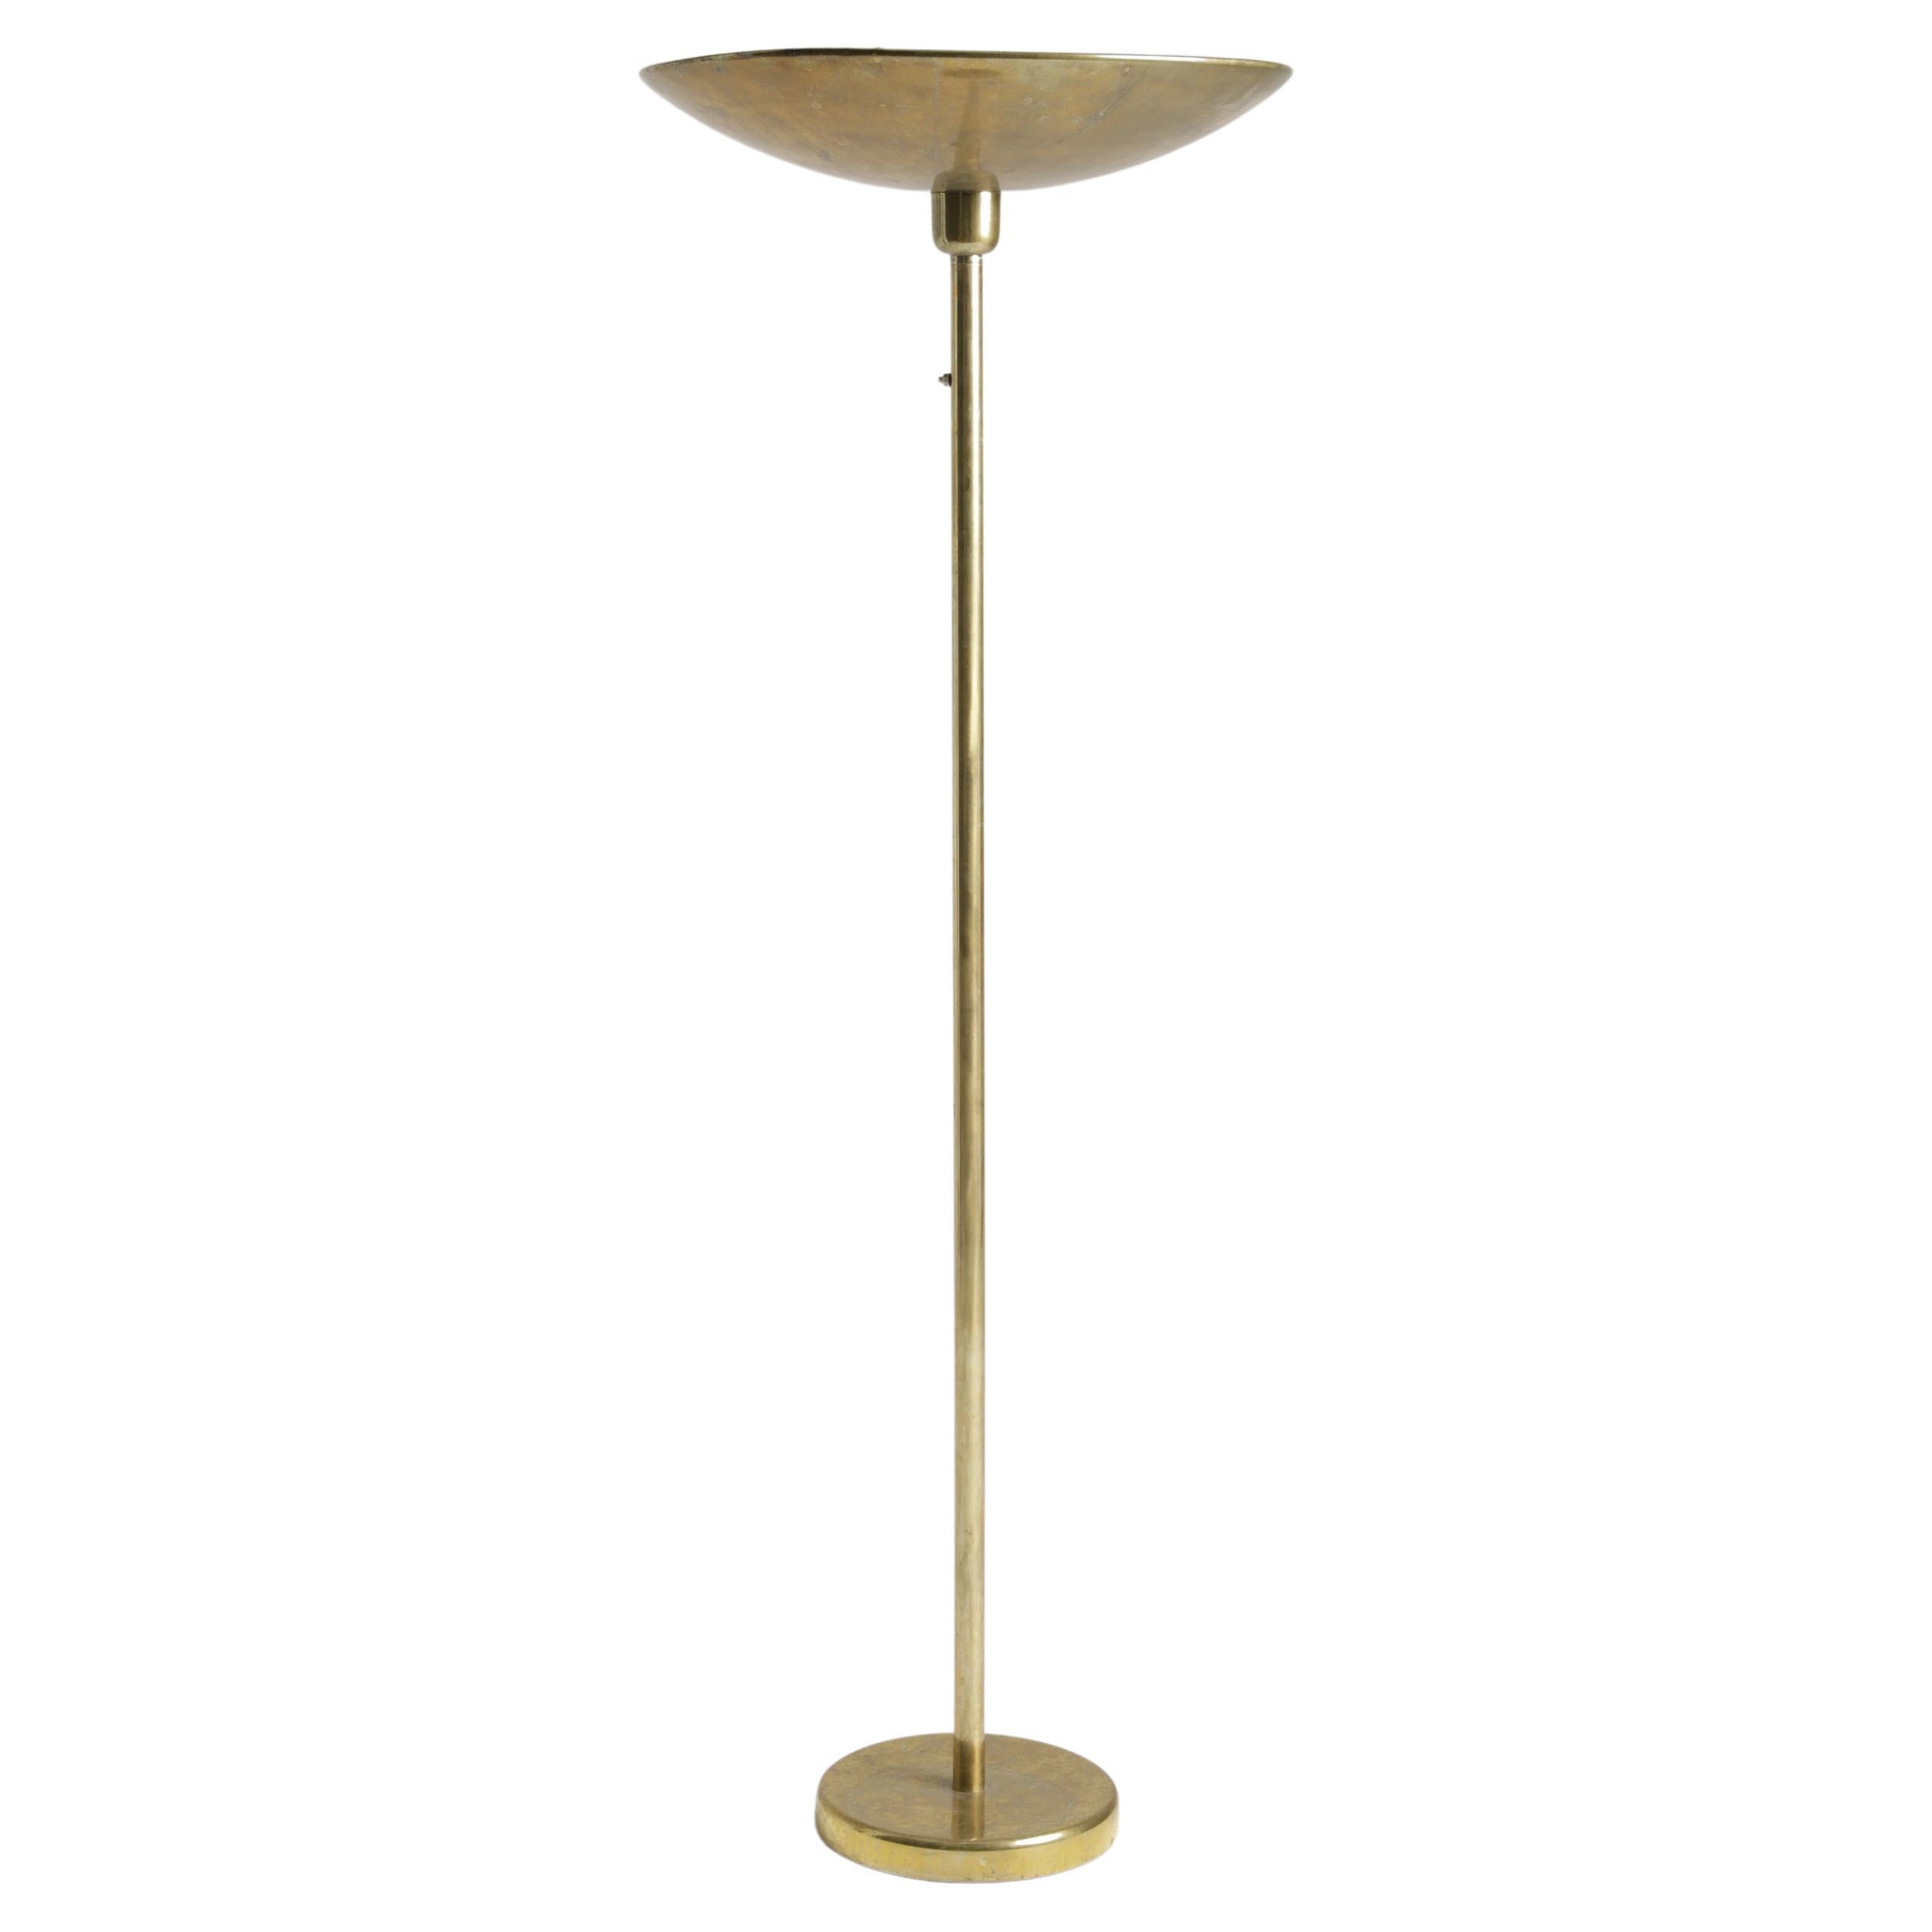 Italian Mid-Century Floor Lamp in brass